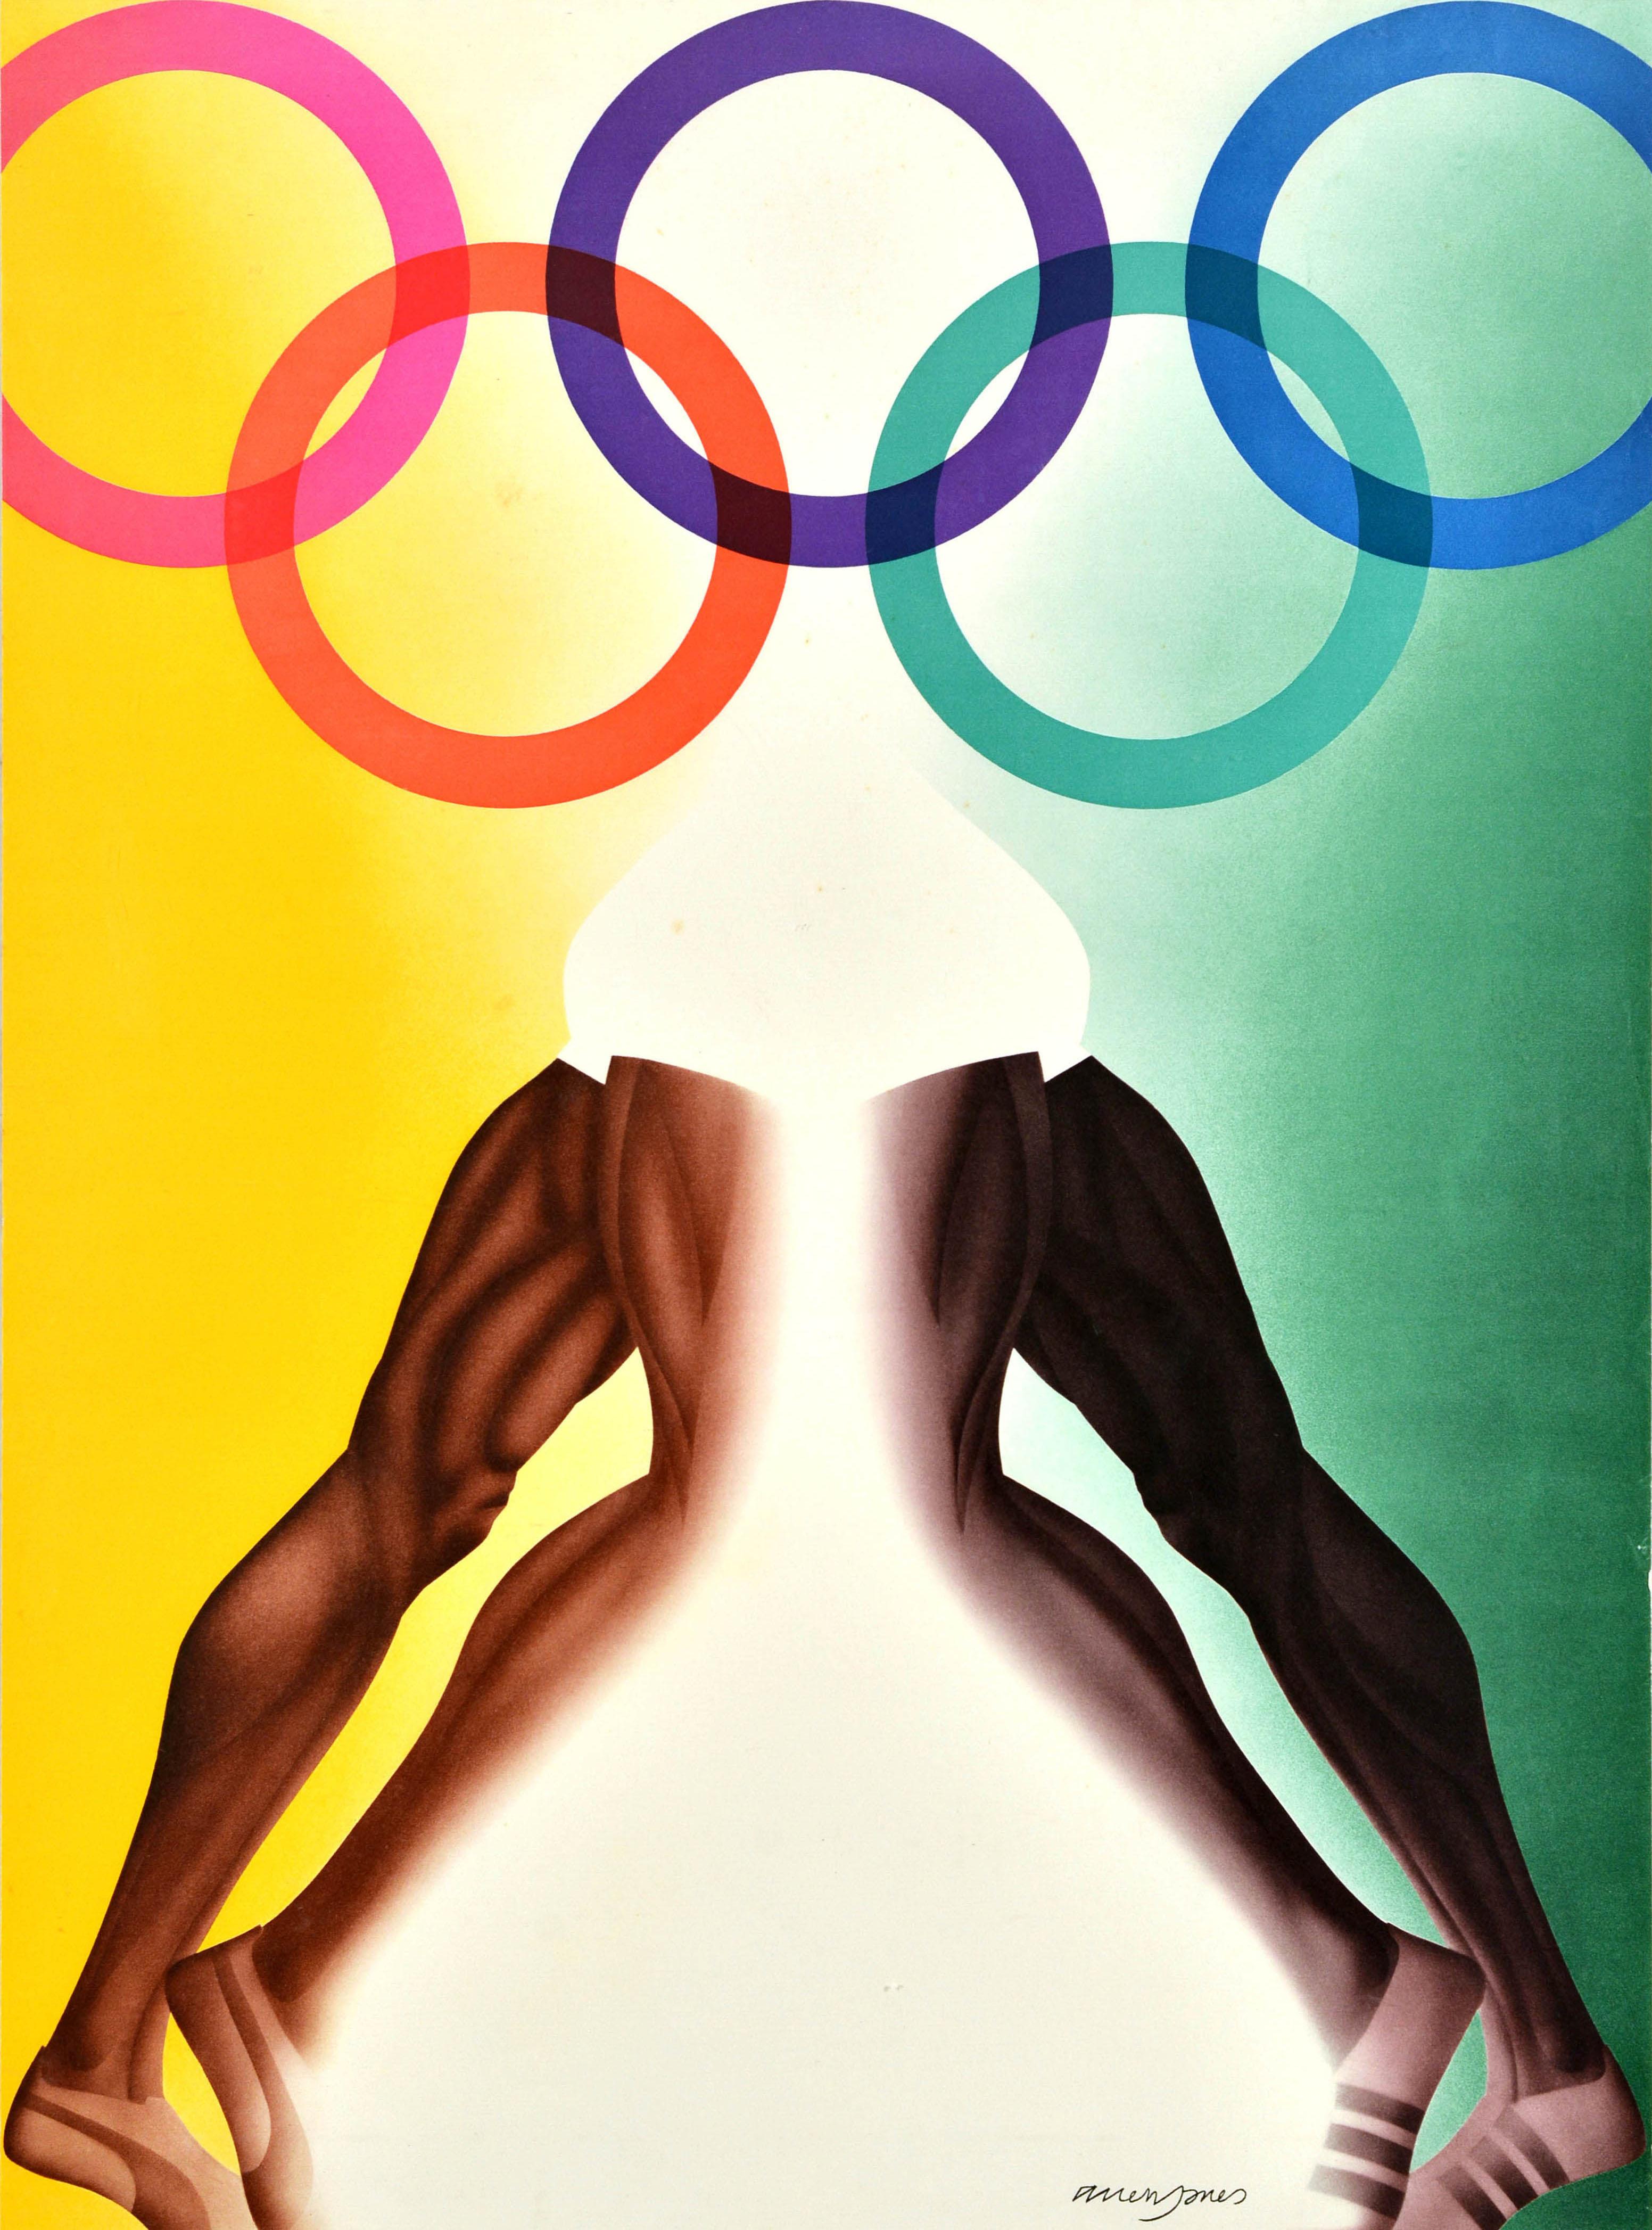 Original Vintage-Sportplakat für die Olympischen Sommerspiele 1972 in München Deutschland mit einer bunten Illustration des britischen Pop-Künstlers Allen Jones (geb. 1937), die das Logo mit den fünf olympischen Ringen in rosa, orange, lila, grün